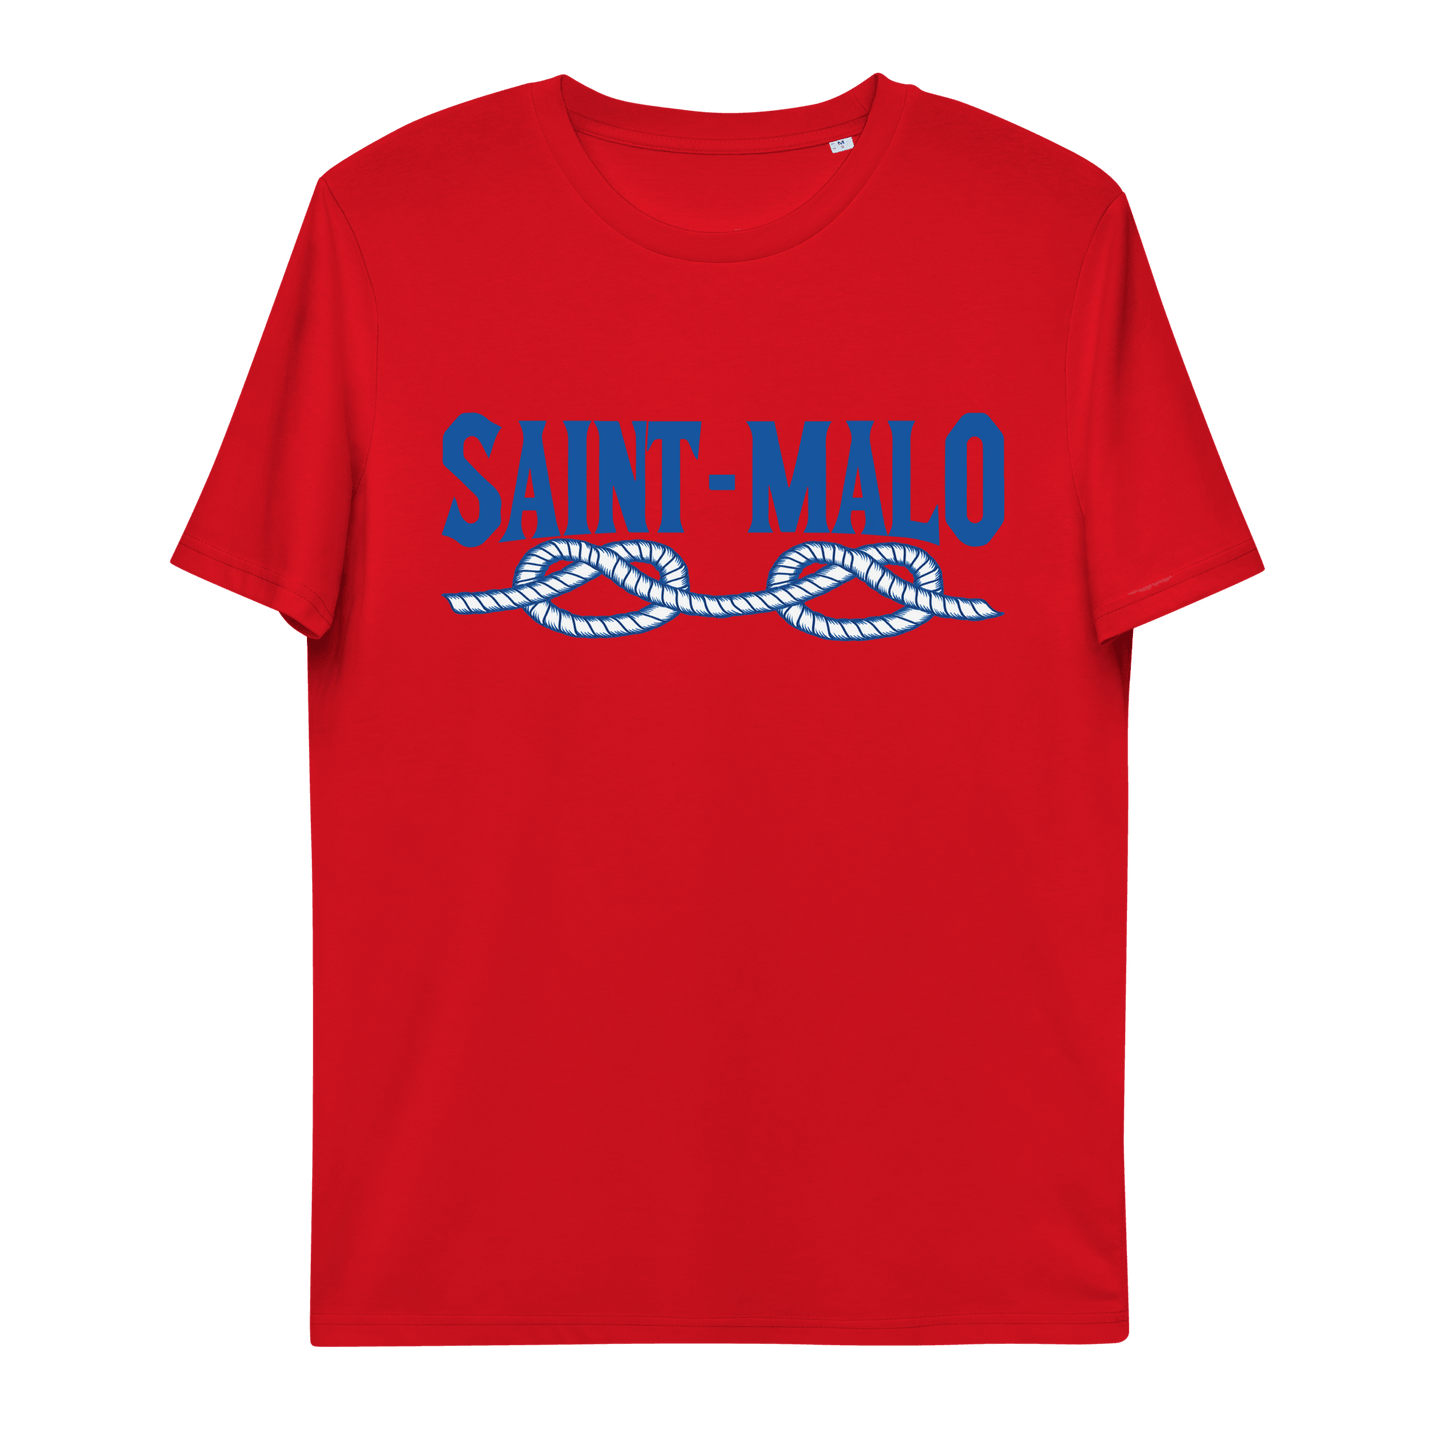 Tee-shirt Saint Malo Corde | Original, Marin & Écologique - Autocollant BZH